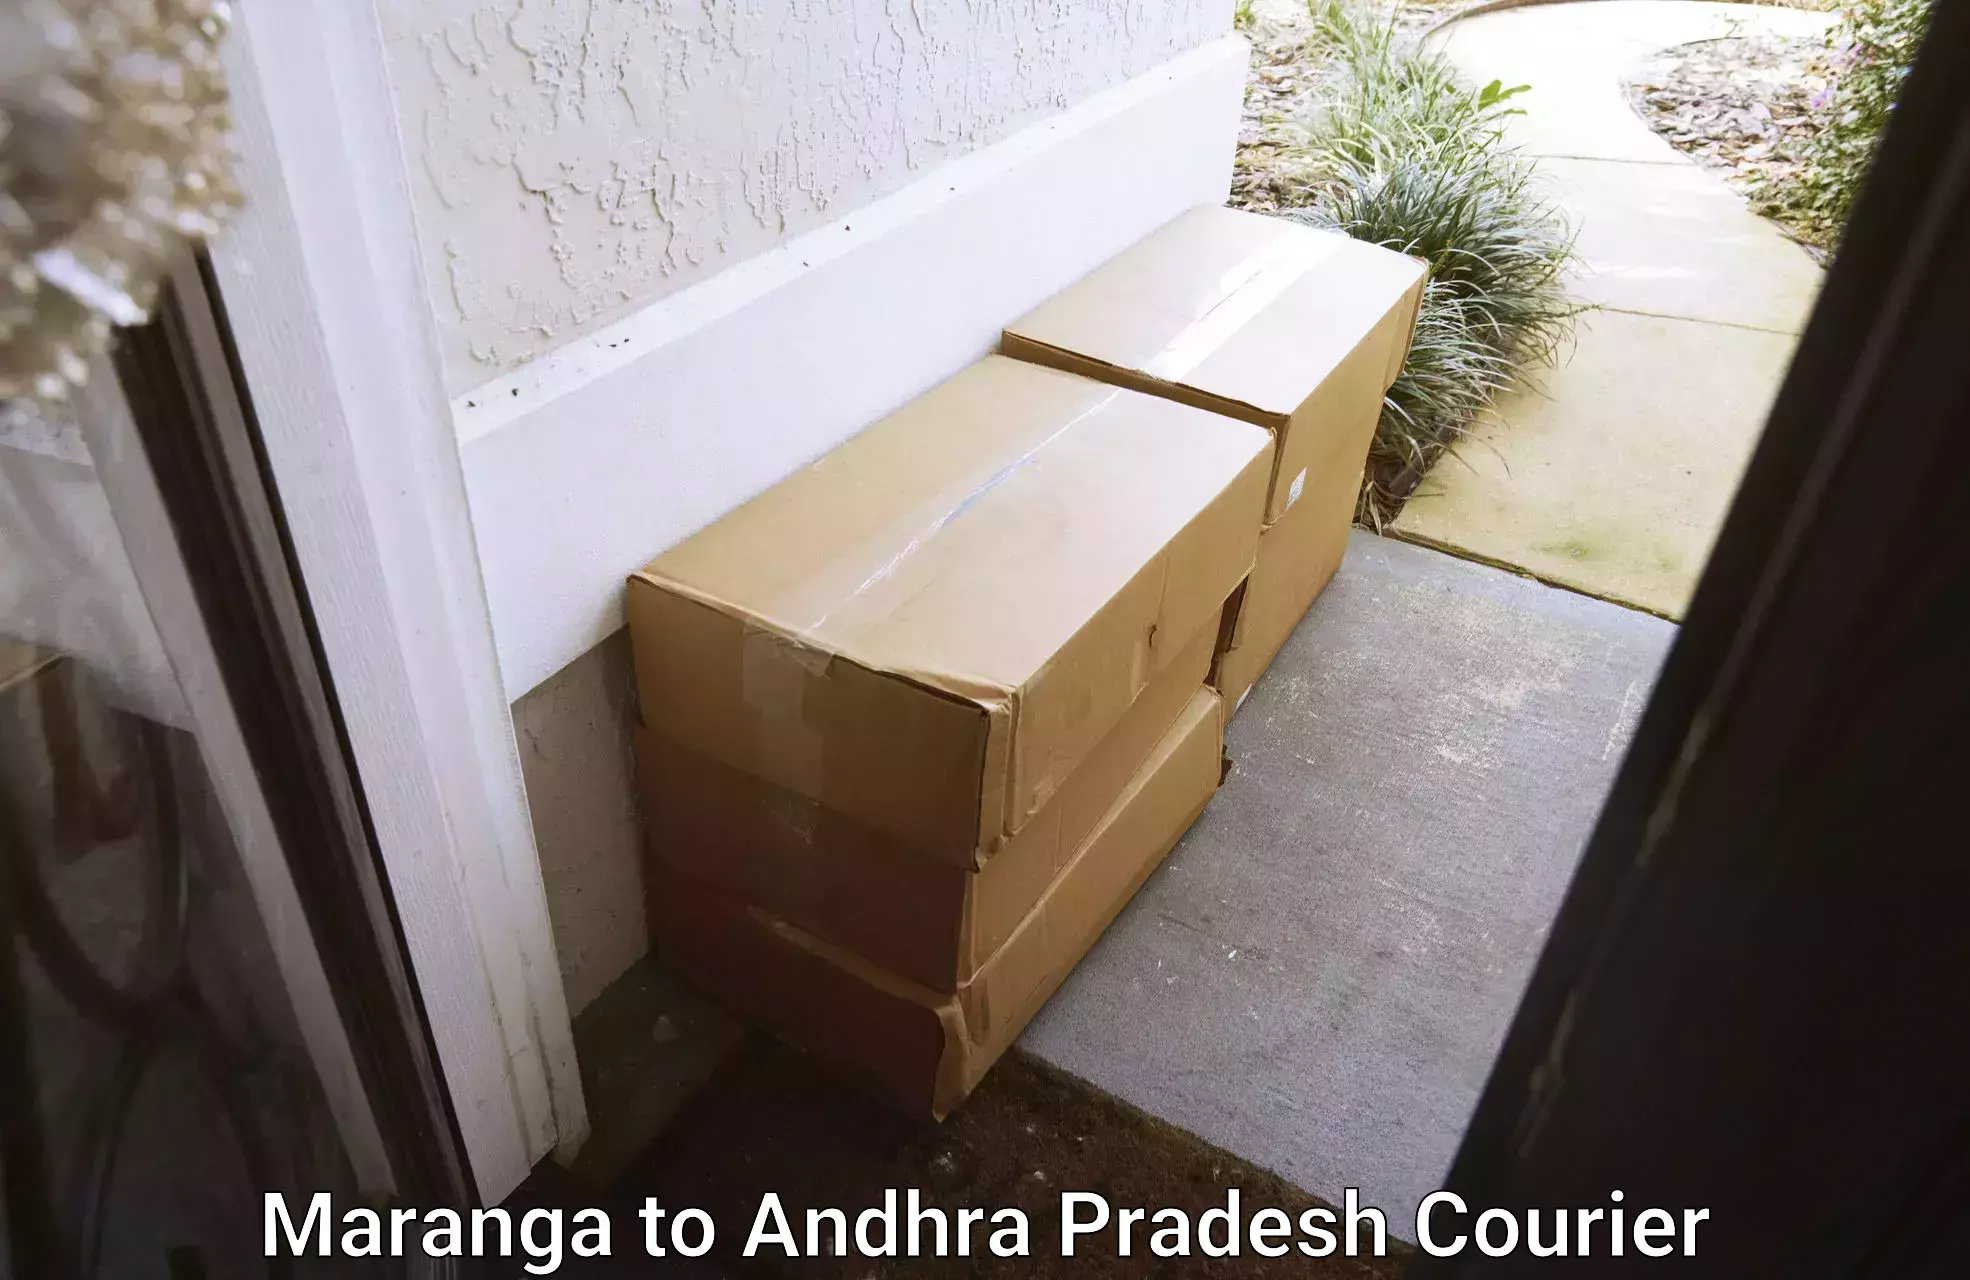 Professional furniture movers Maranga to Andhra Pradesh